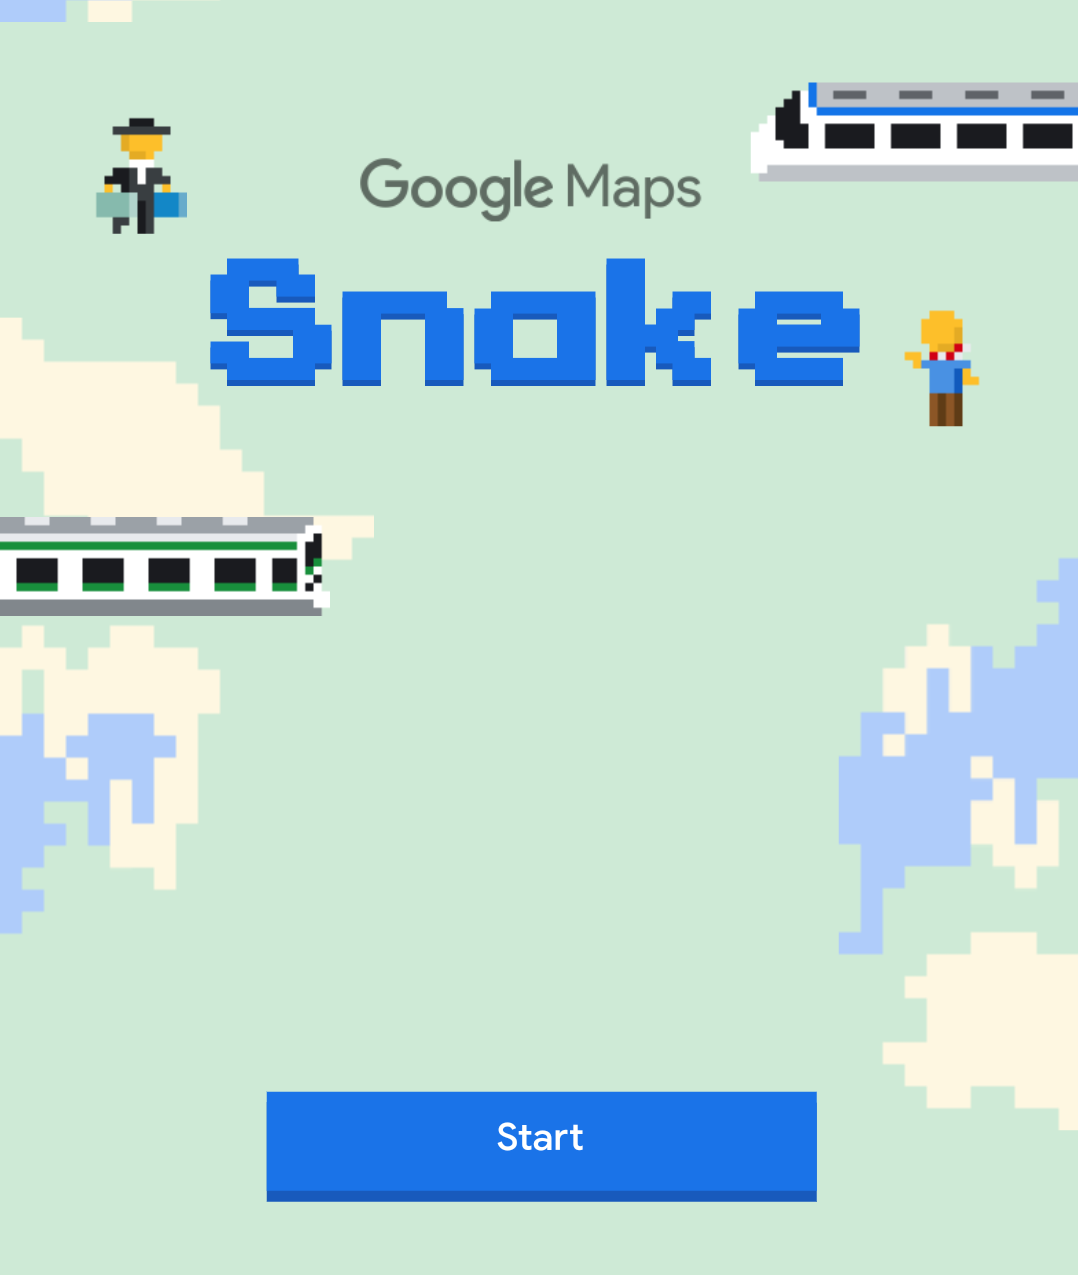 Aplikasi Google Maps hadirkan game klasik Snake di dalamnya